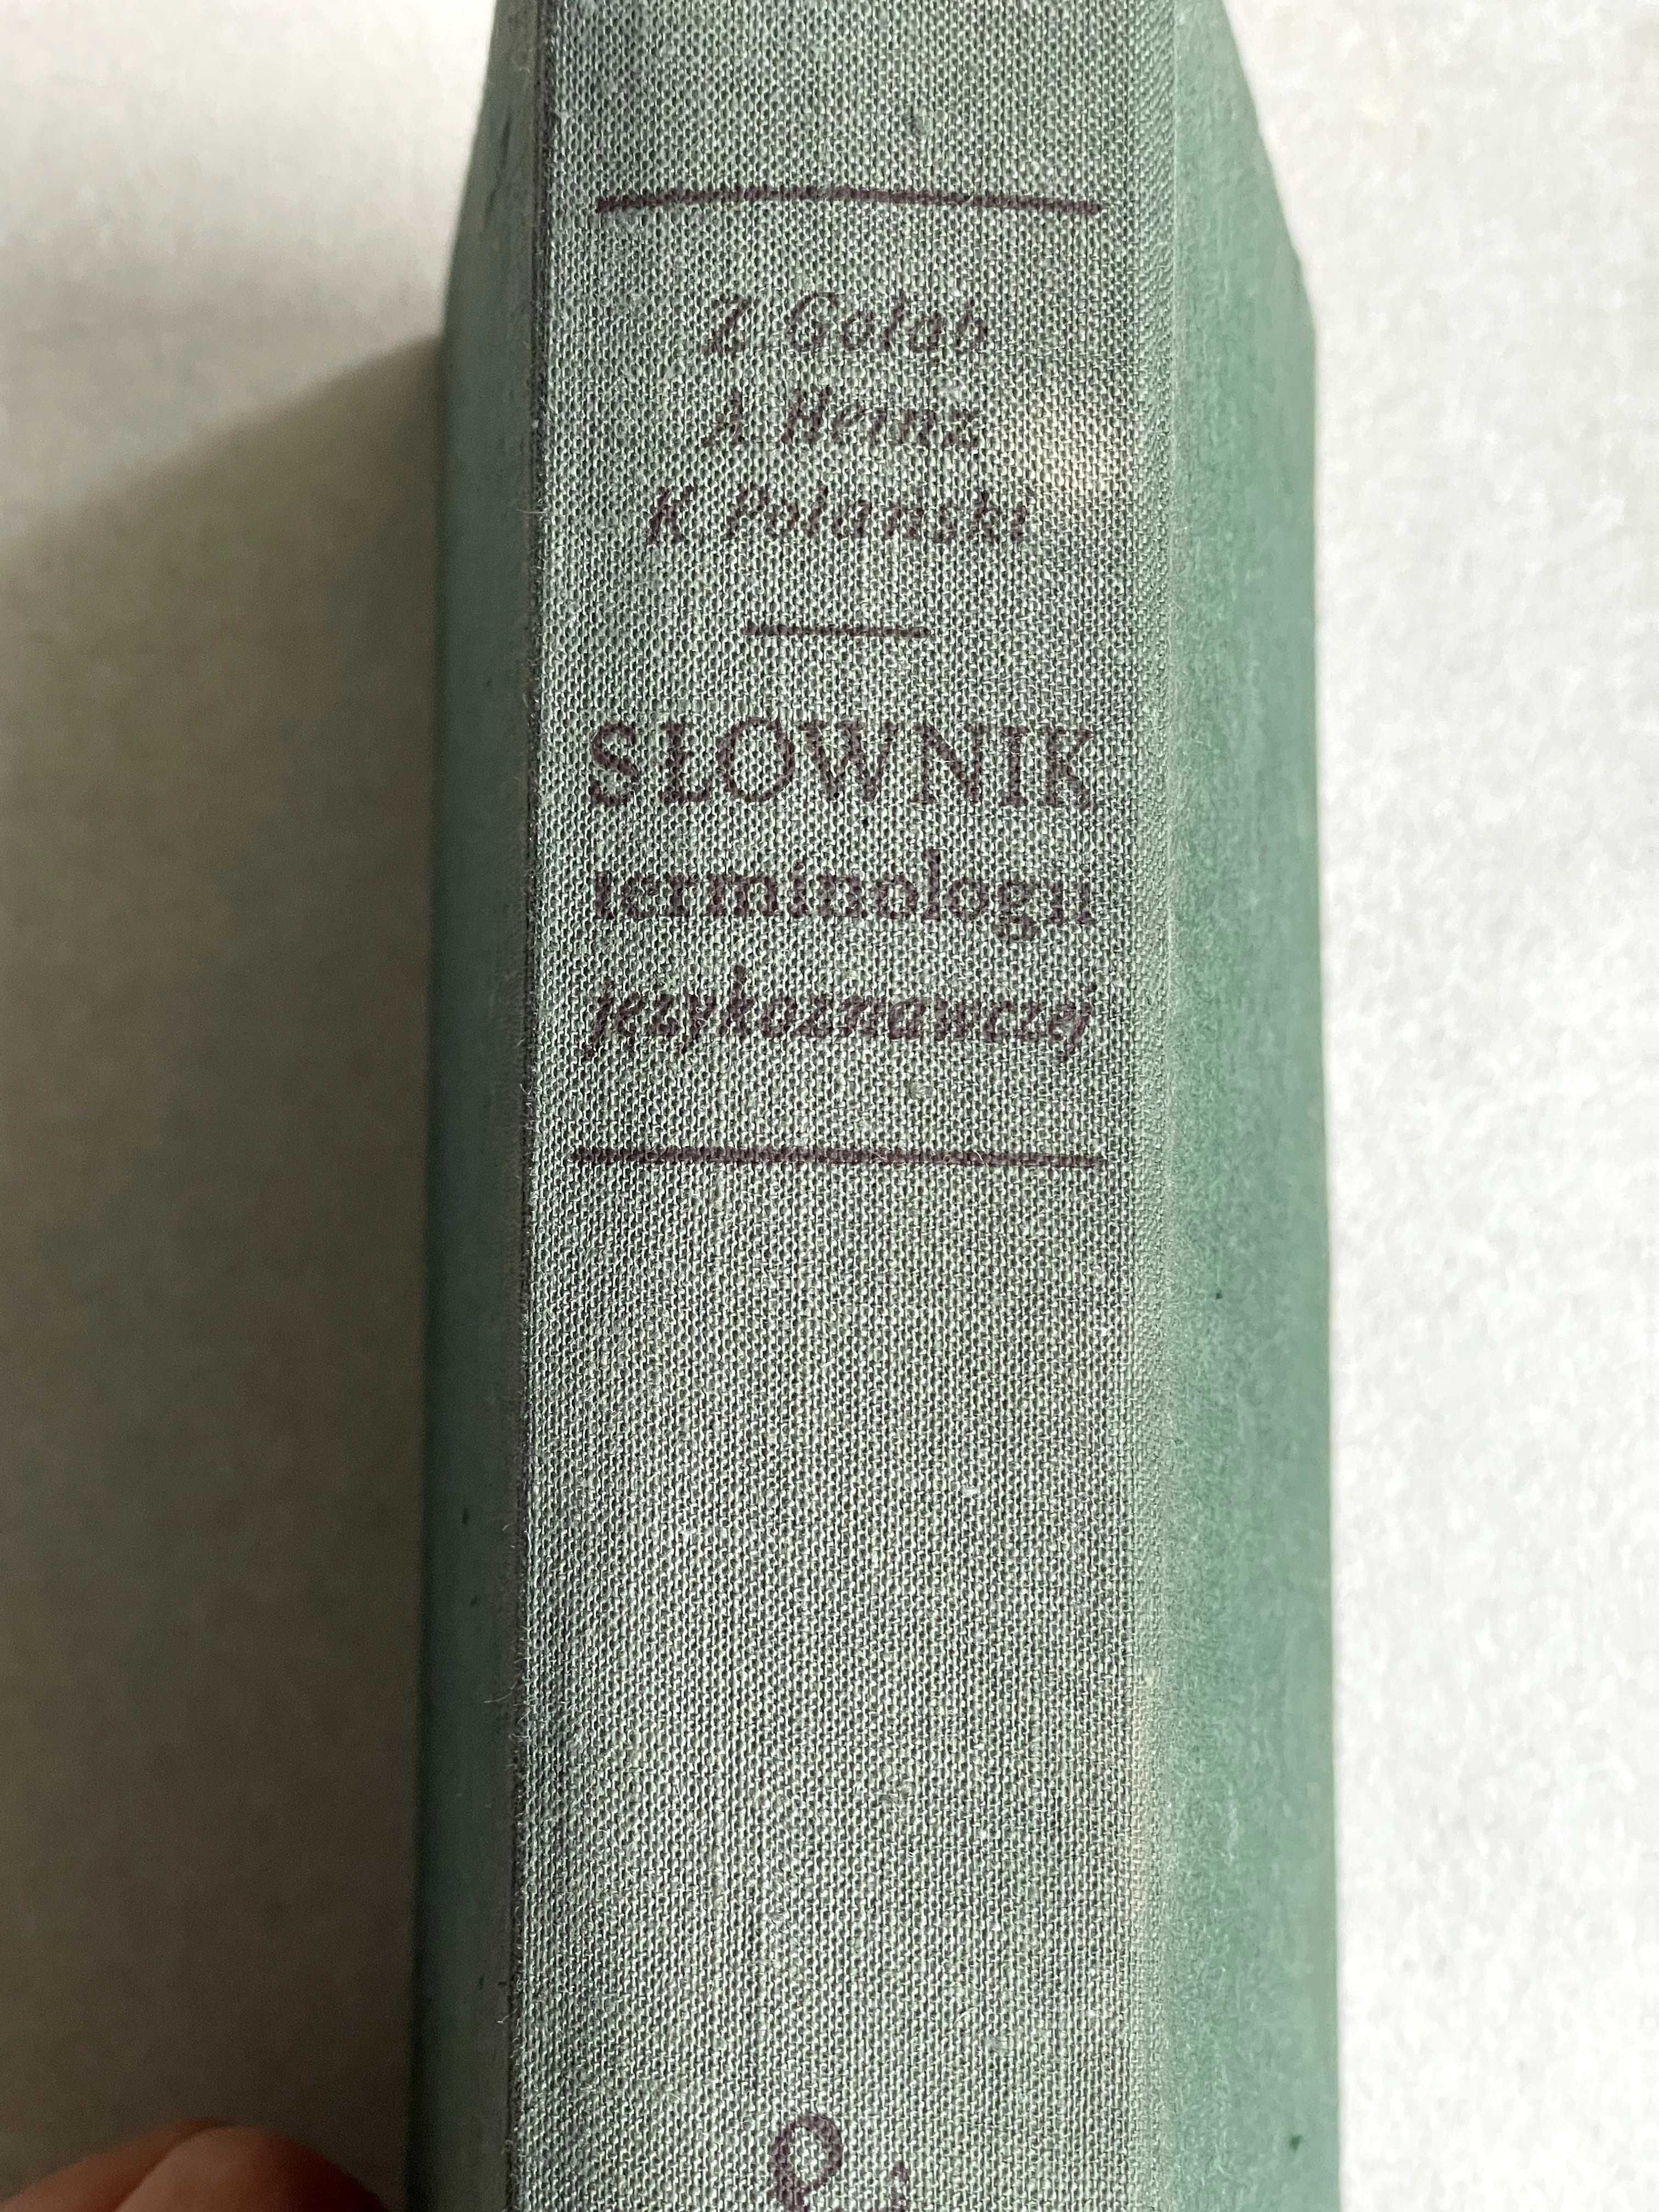 Słownik terminologii językoznawczej (Gołąb, Heinz, Połański)